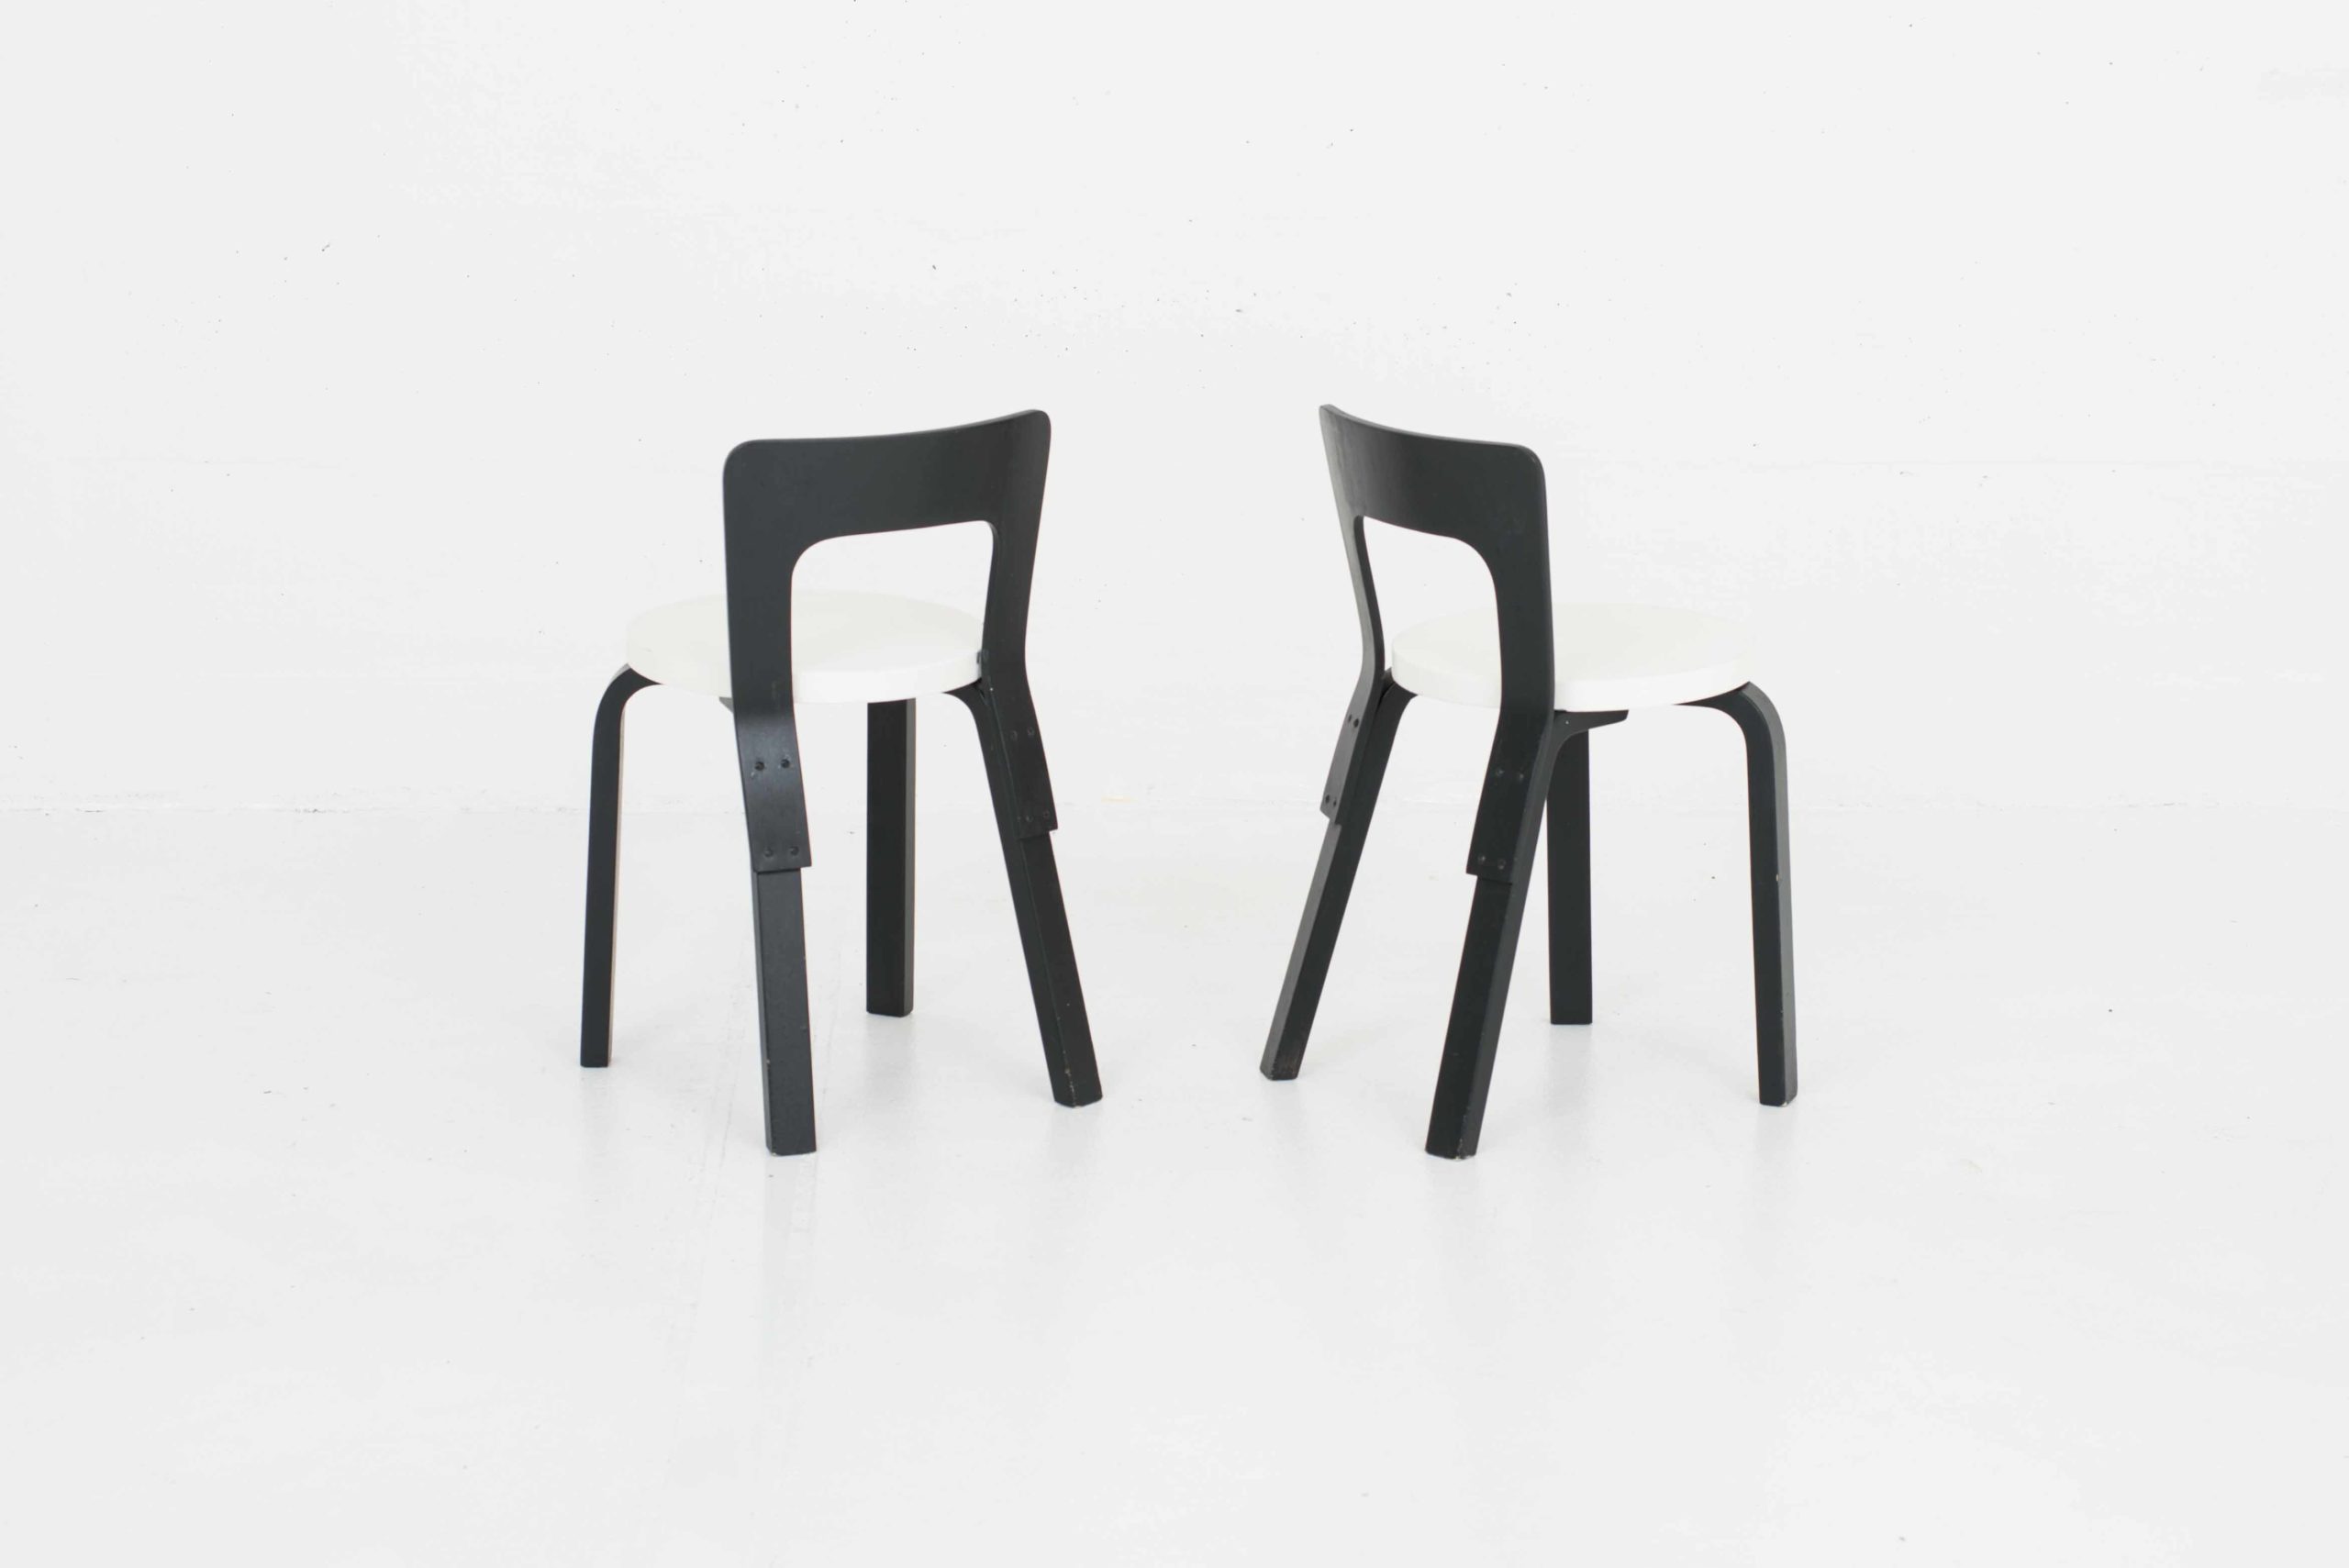 Artek Chair 65 von Alvar Aalto, im Zweierset-1